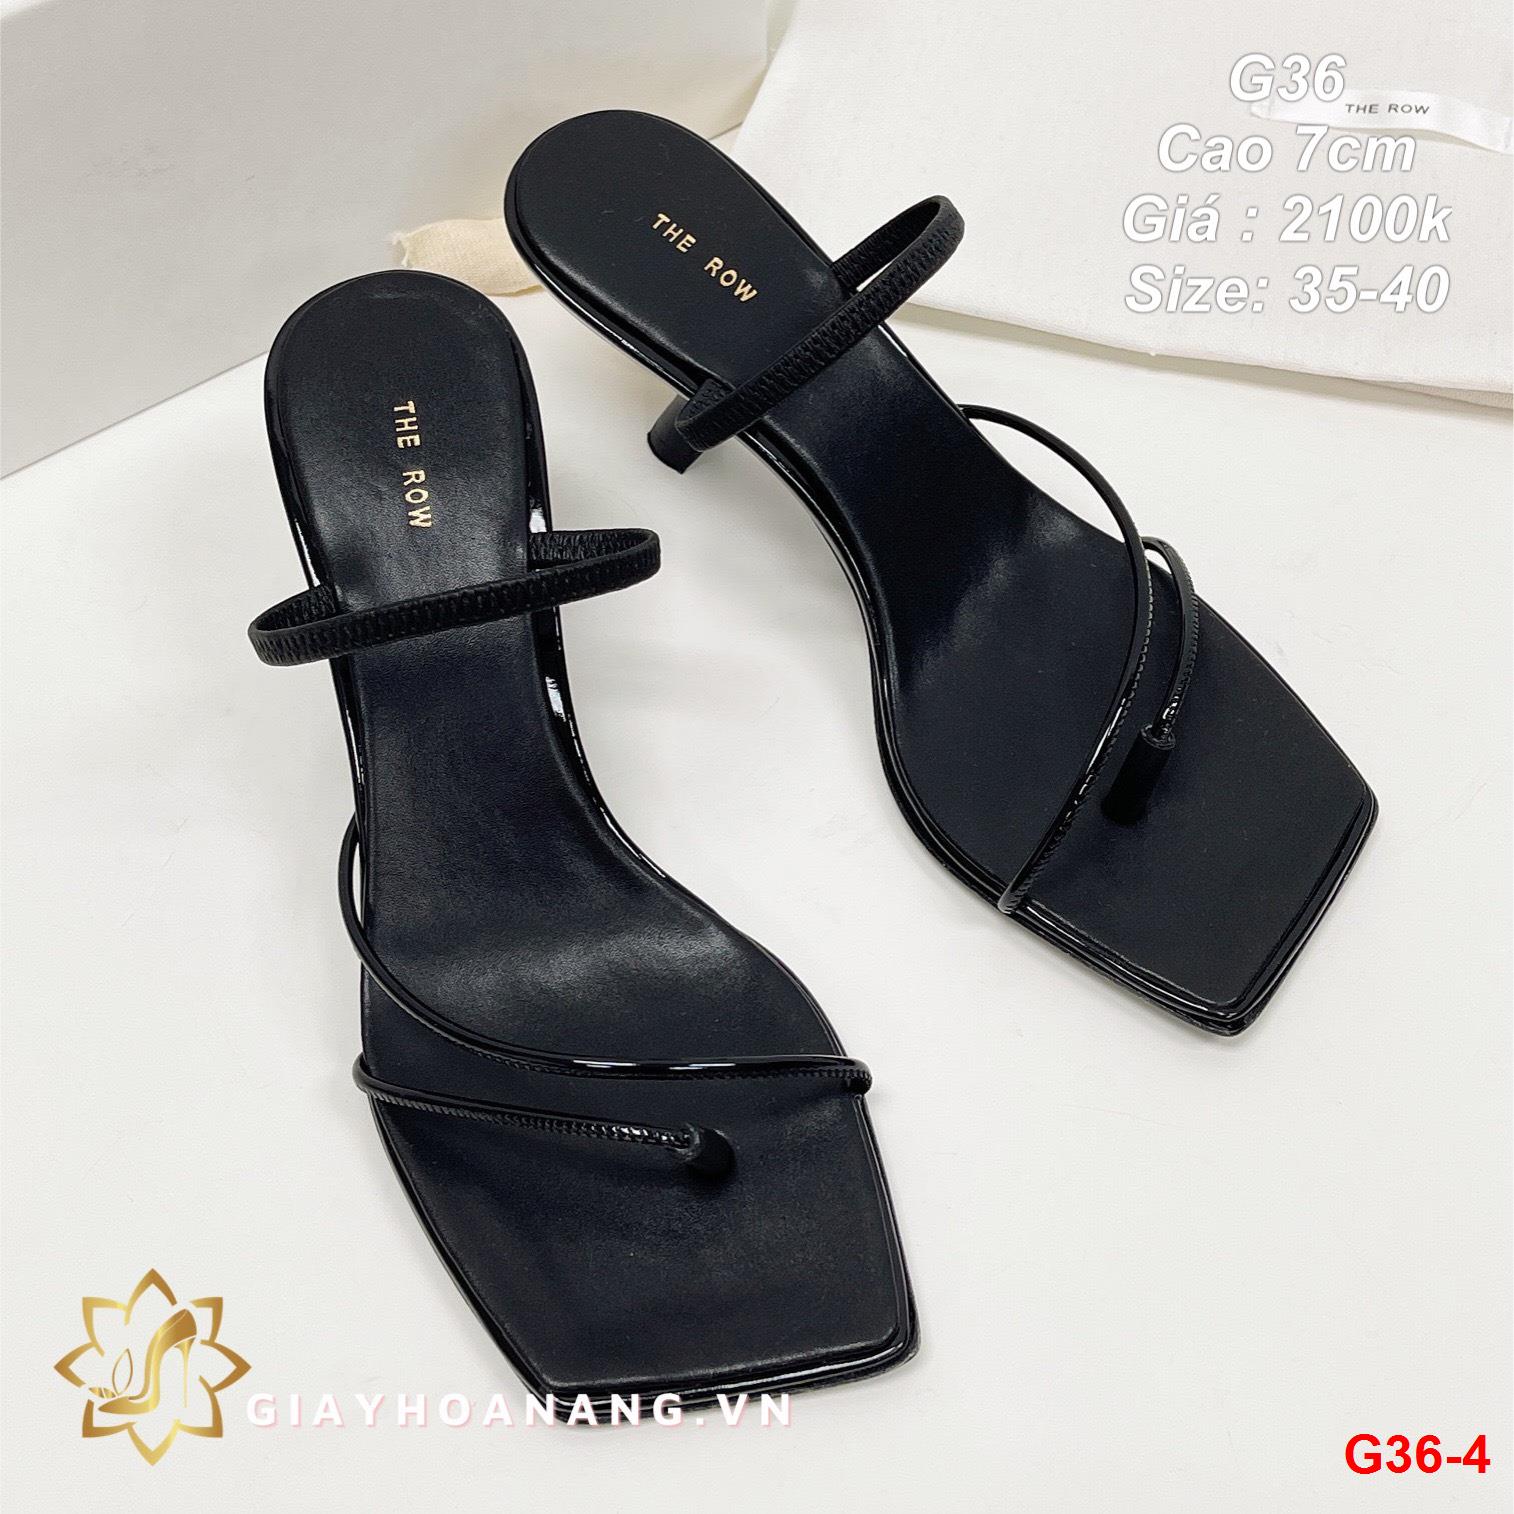 G36-4 The Row sandal cao 7cm siêu cấp